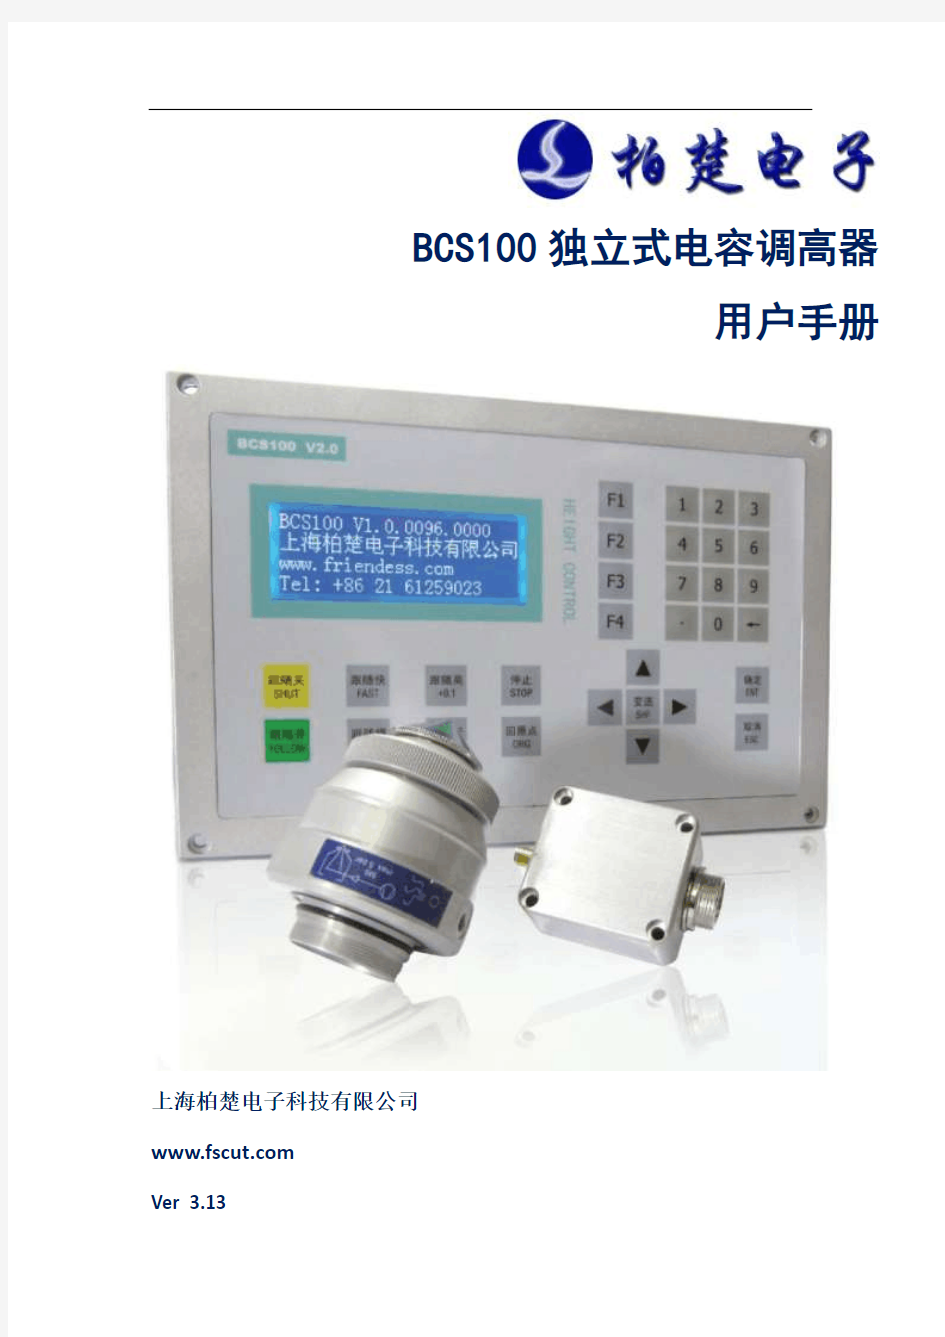 BCS100 独立式电容调高器用户手册V3.13